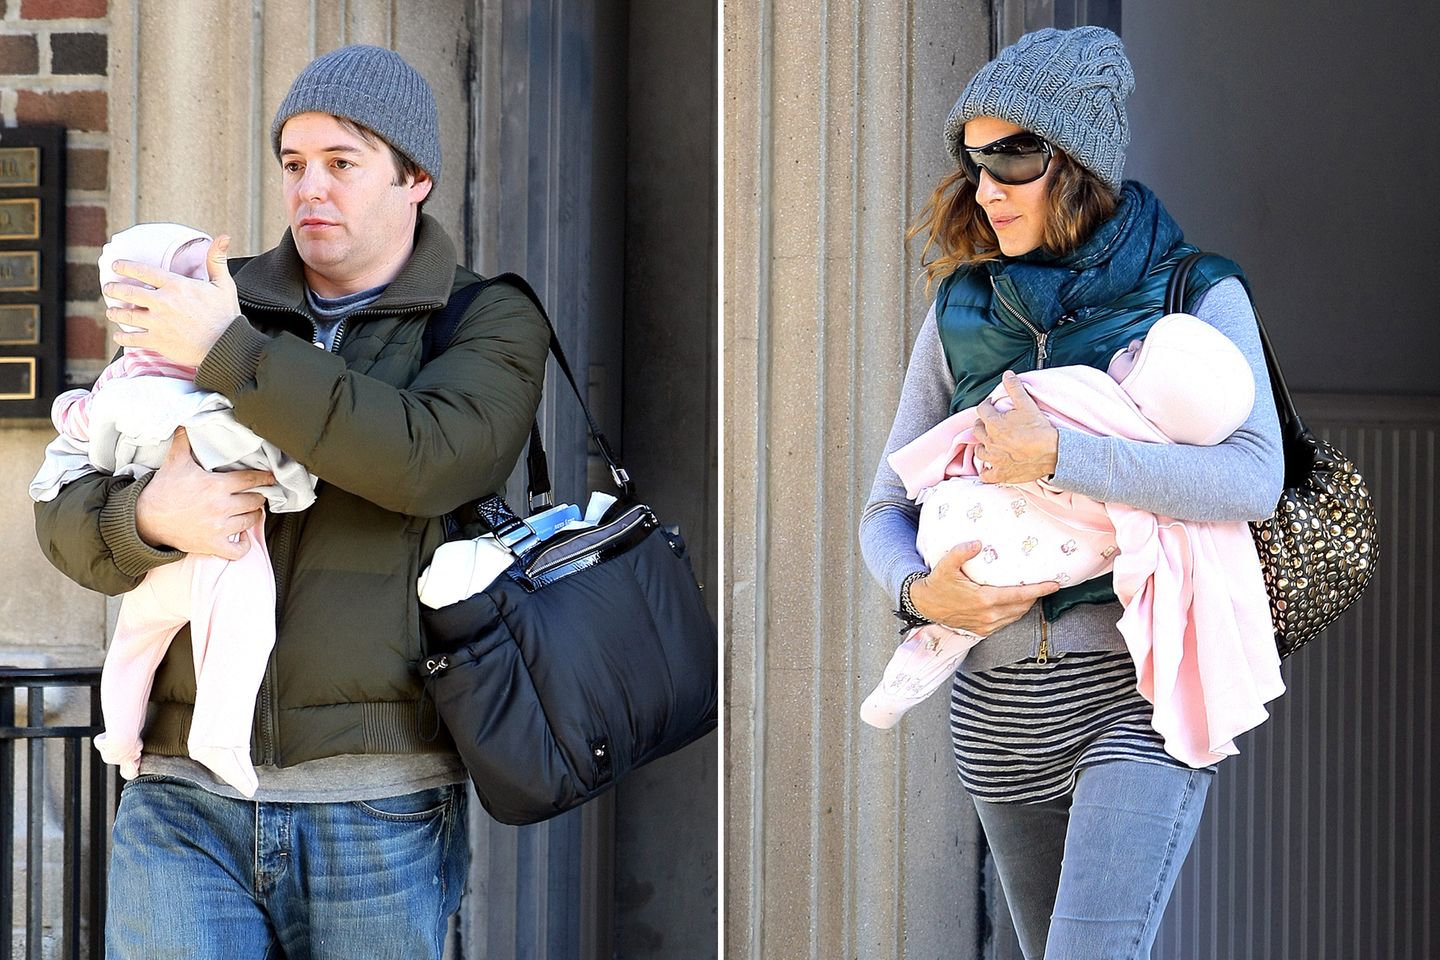 Dezember 2009: Matthew Broderick und Sarah Jessica Parker zeigen sich mit ihren Zwillingen Marion und Tabitha beim Spaziergang in New York.